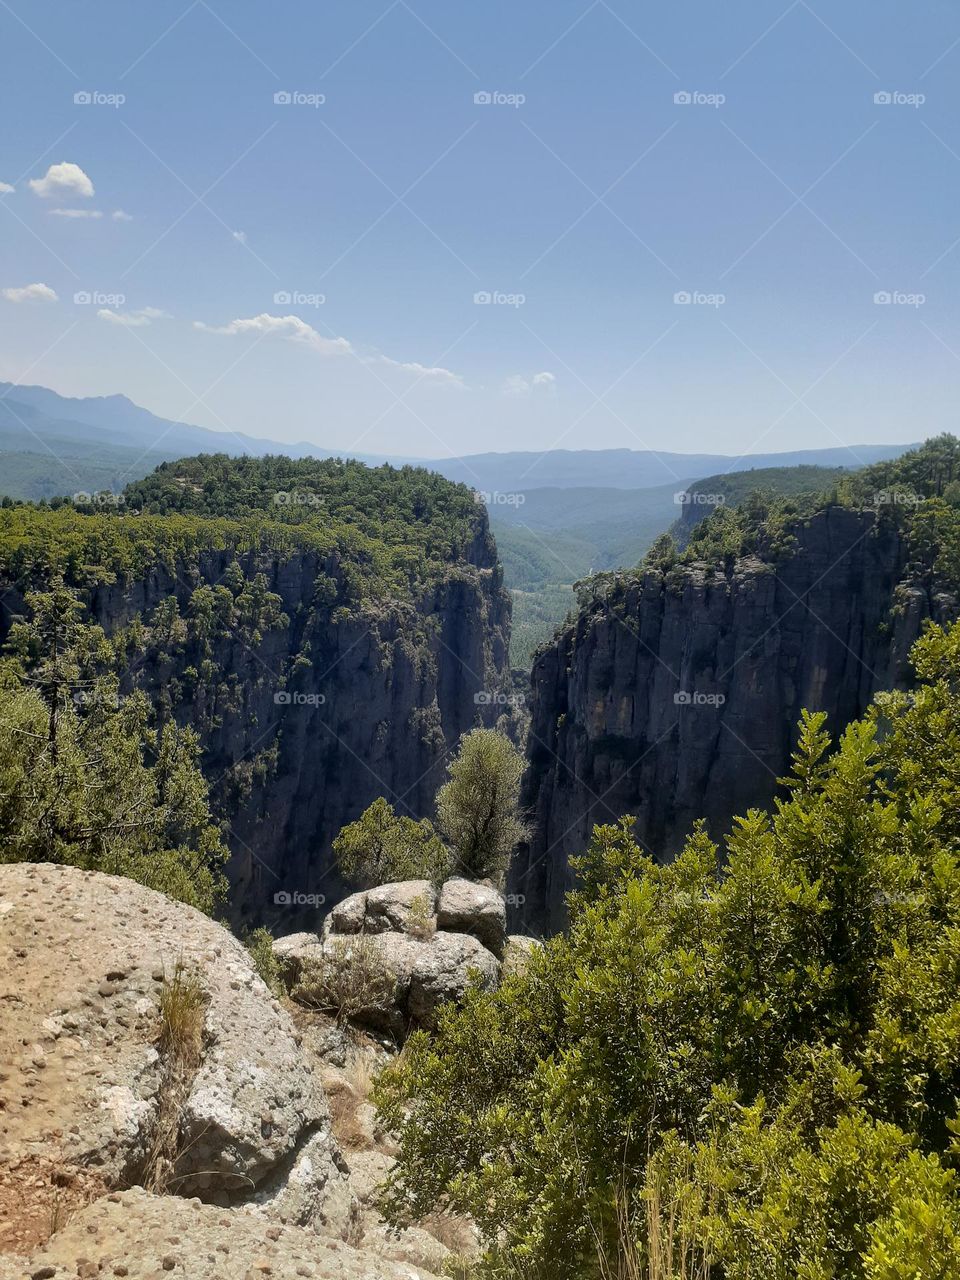 Tizi Canyon in Turkey